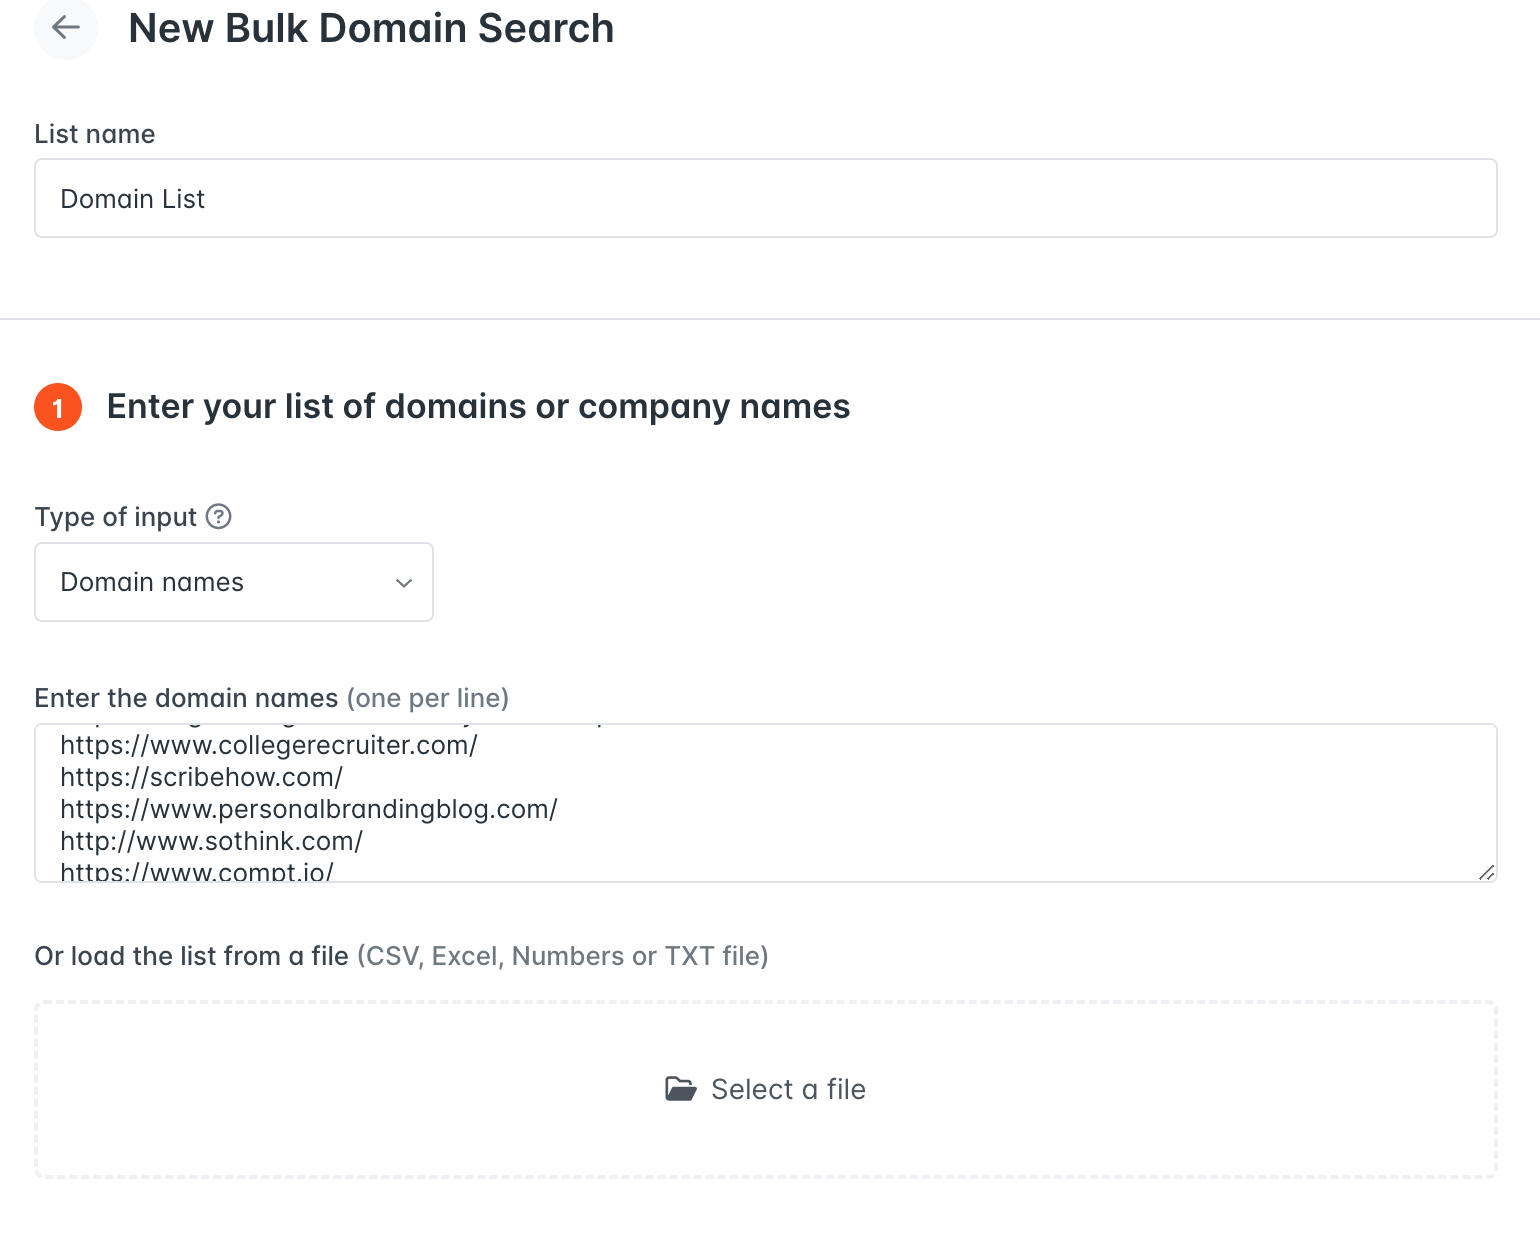 Hunter's Bulk Domain Search